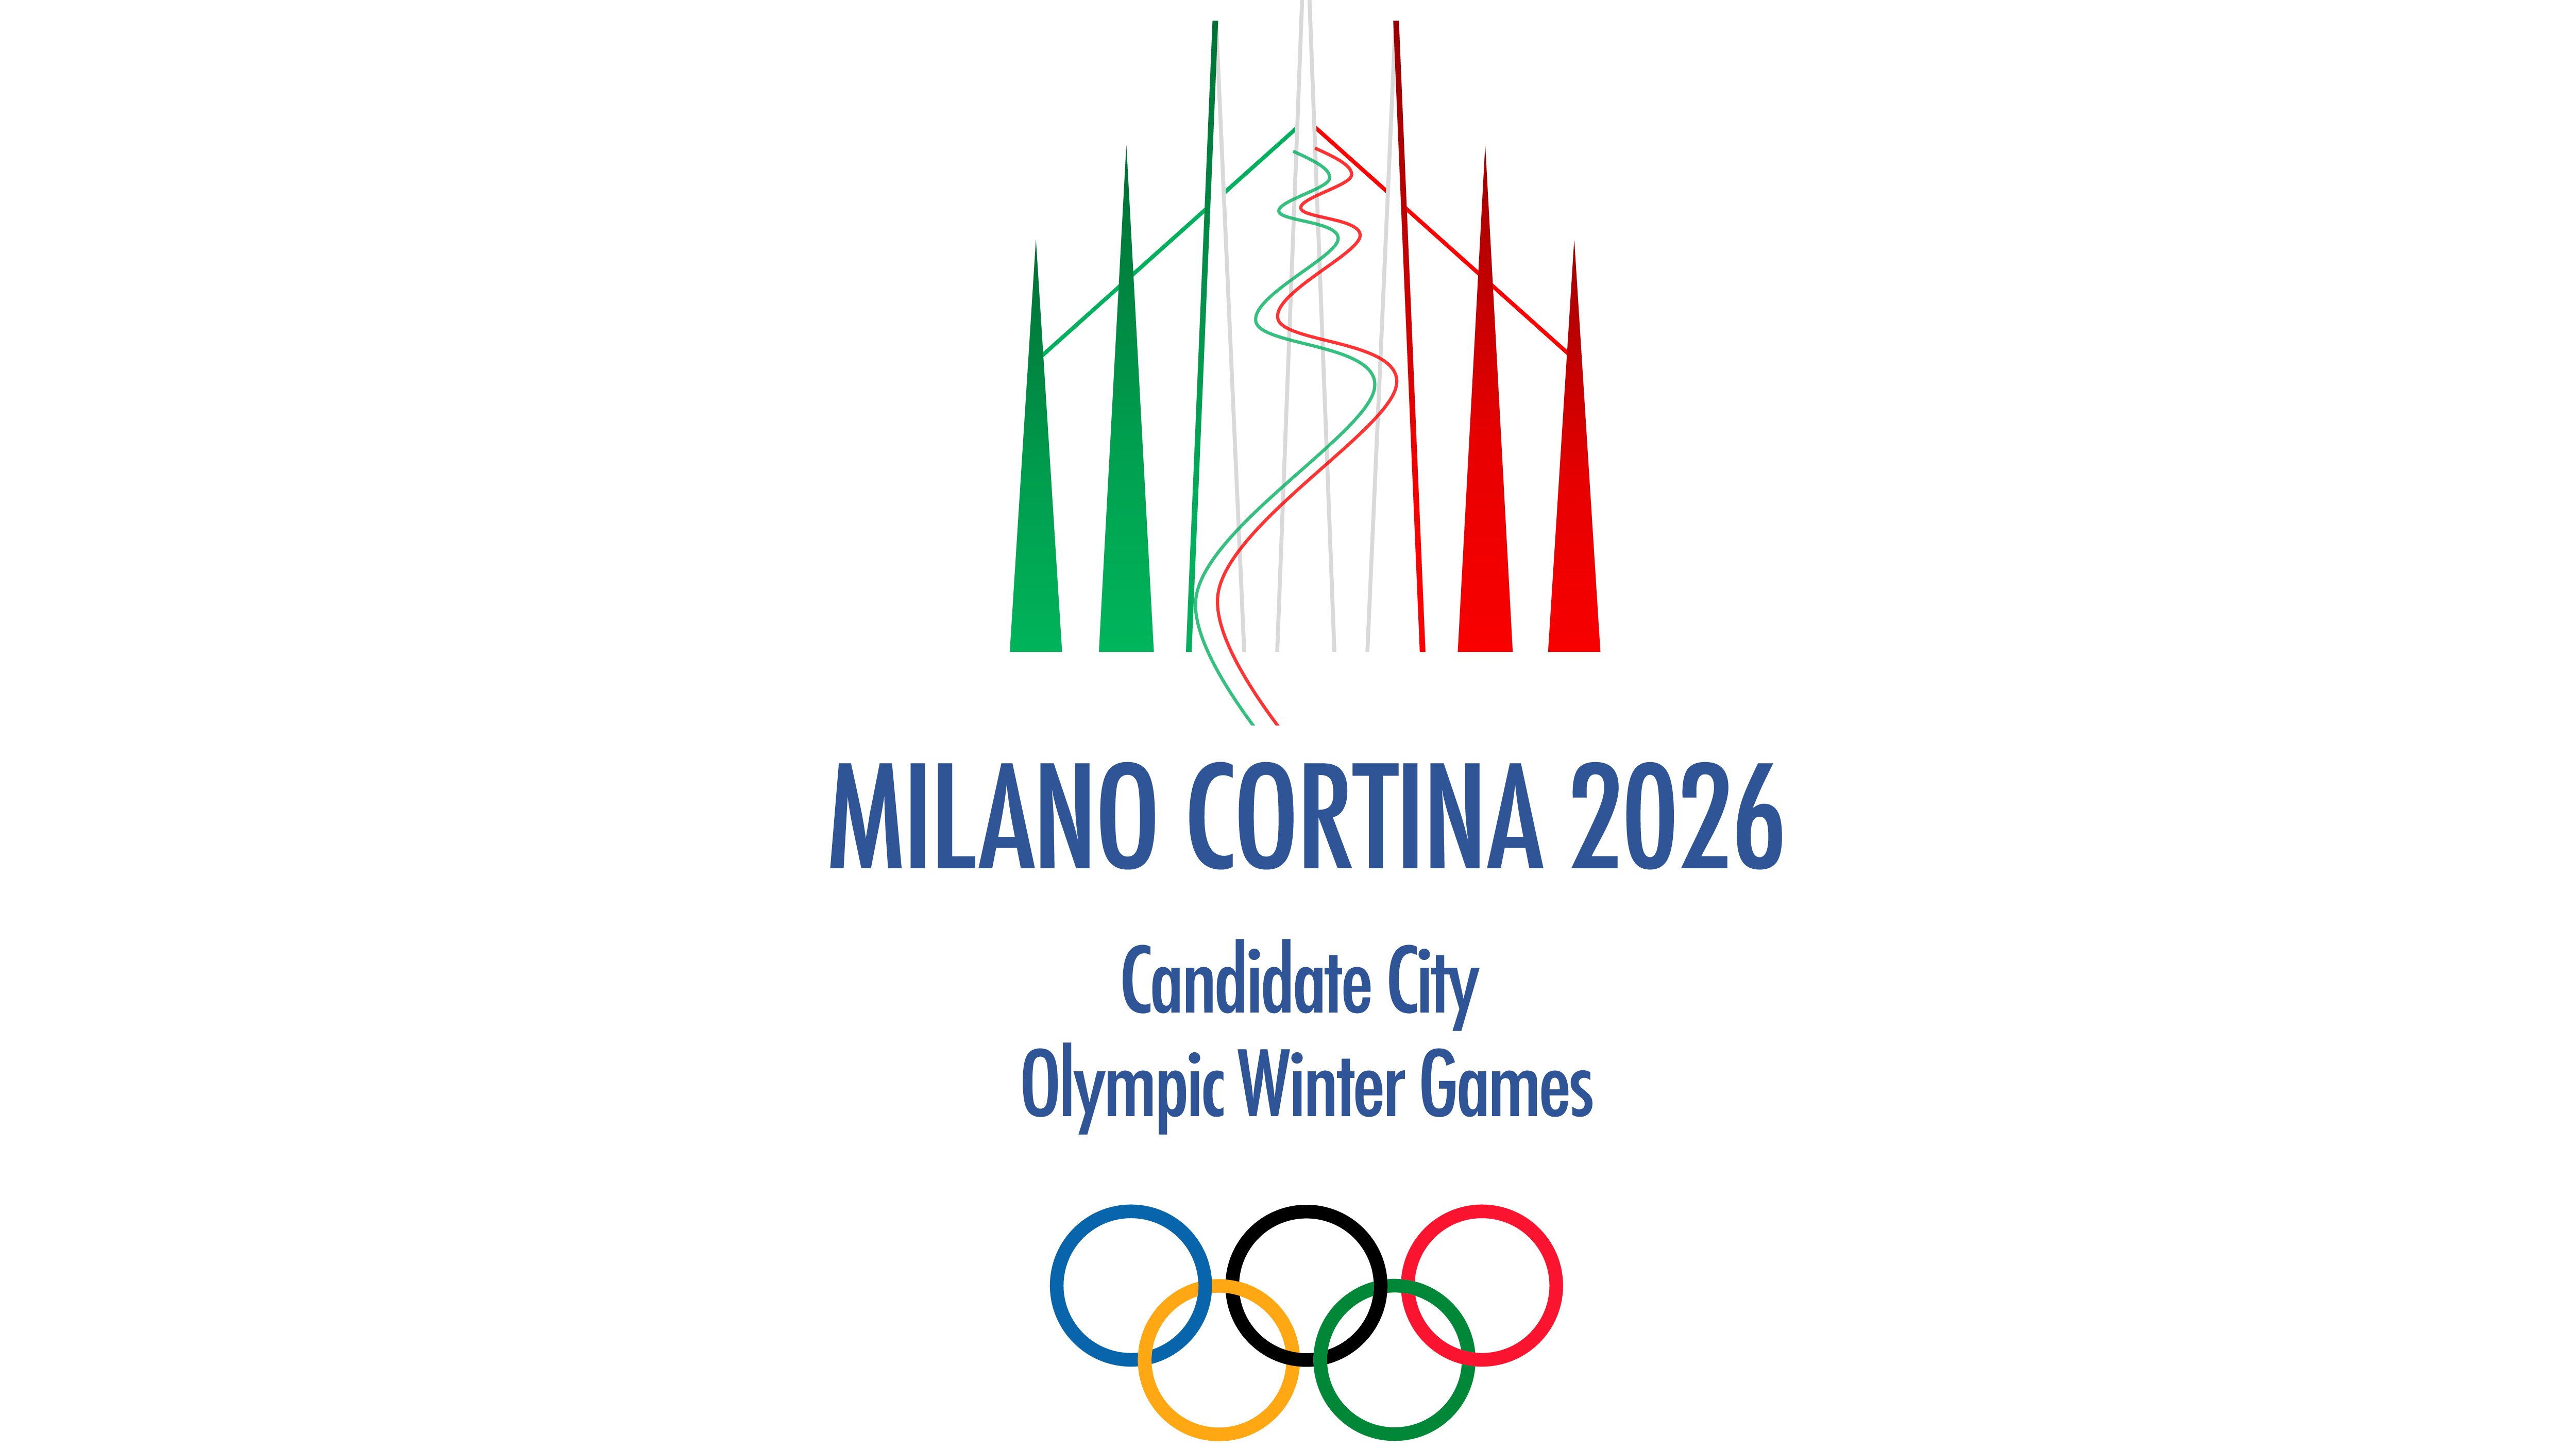 Zimske olimpijske igre 2026 bodo v Milanu in Cortini d'Ampezzo